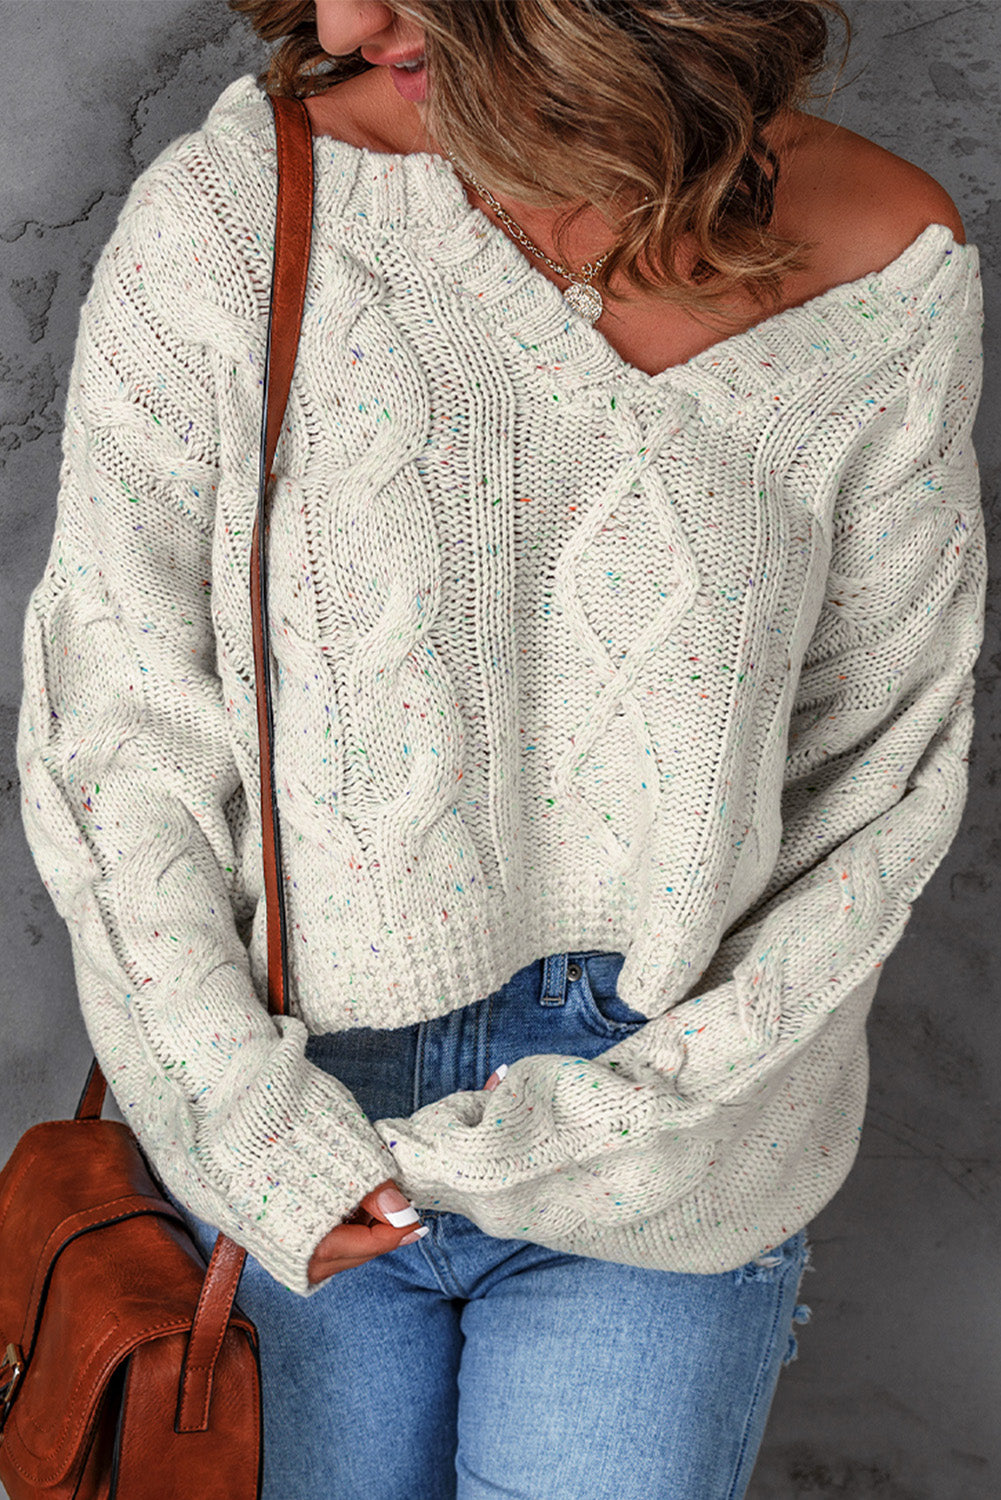 Maglione pullover con dettagli pilling multicolori bianchi